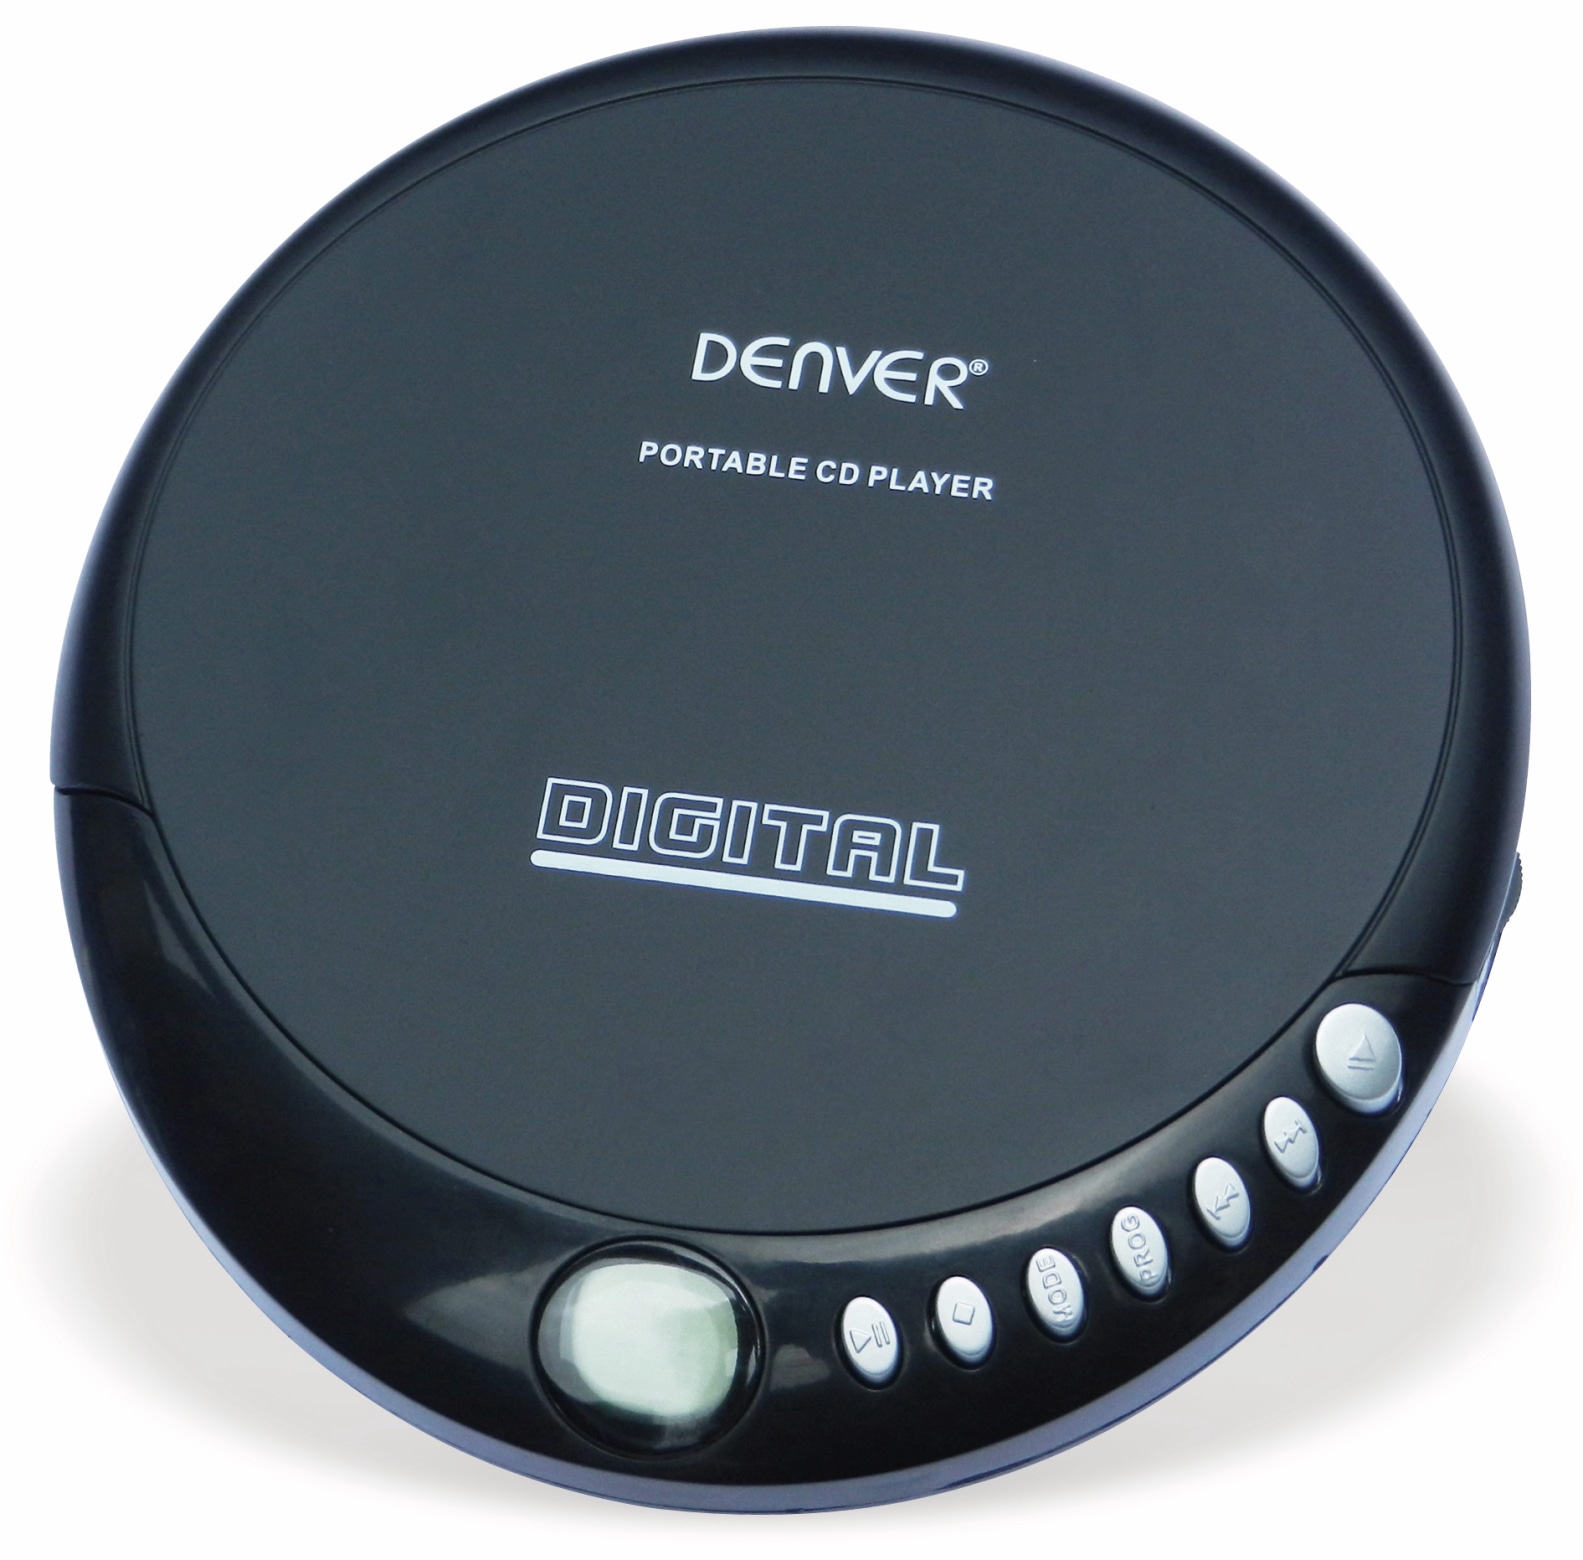 DENVER Portabler CD-Player DM-24, schwarz